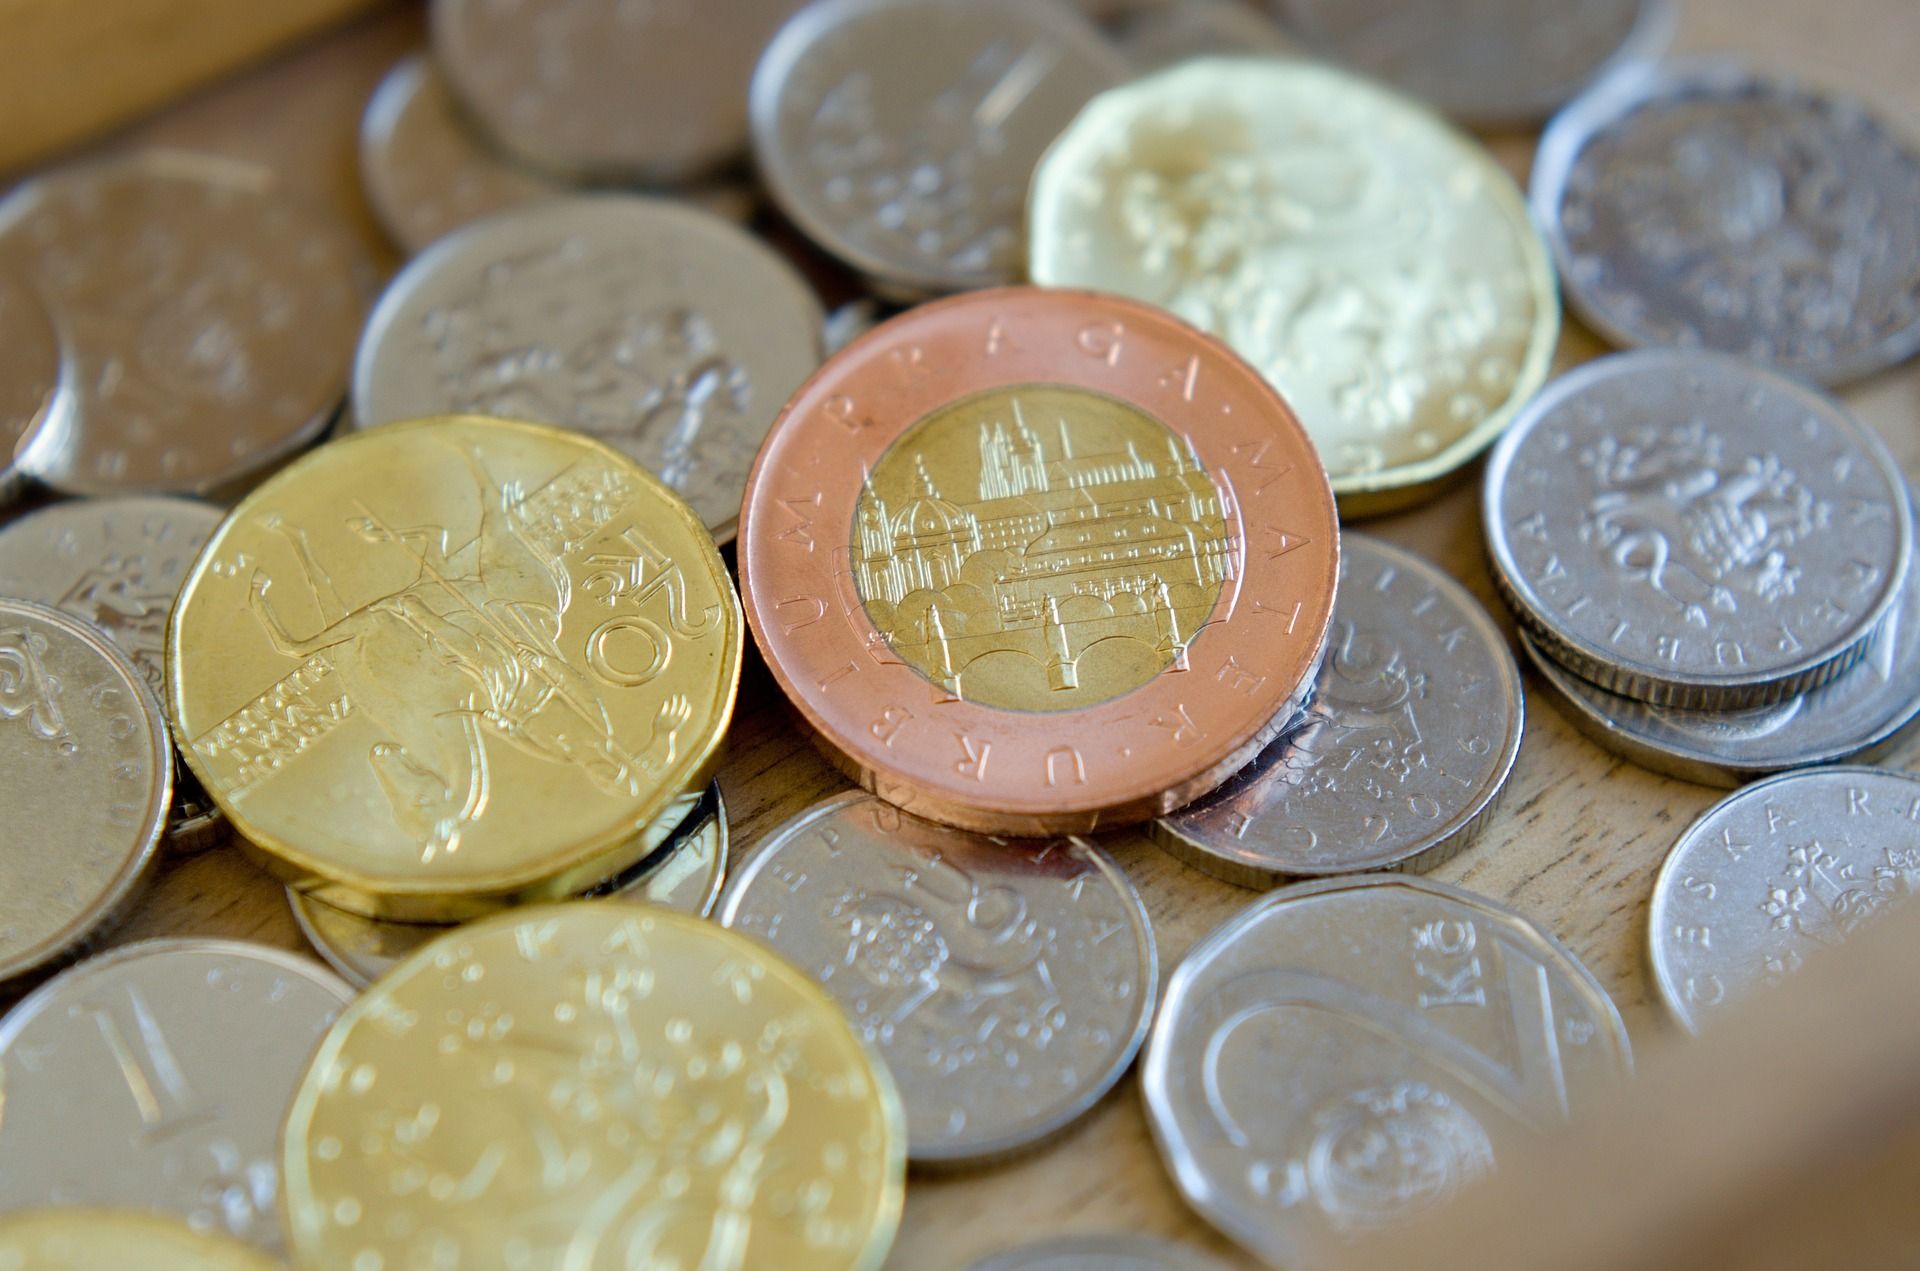 czech-coins-3718912_1920.jpg